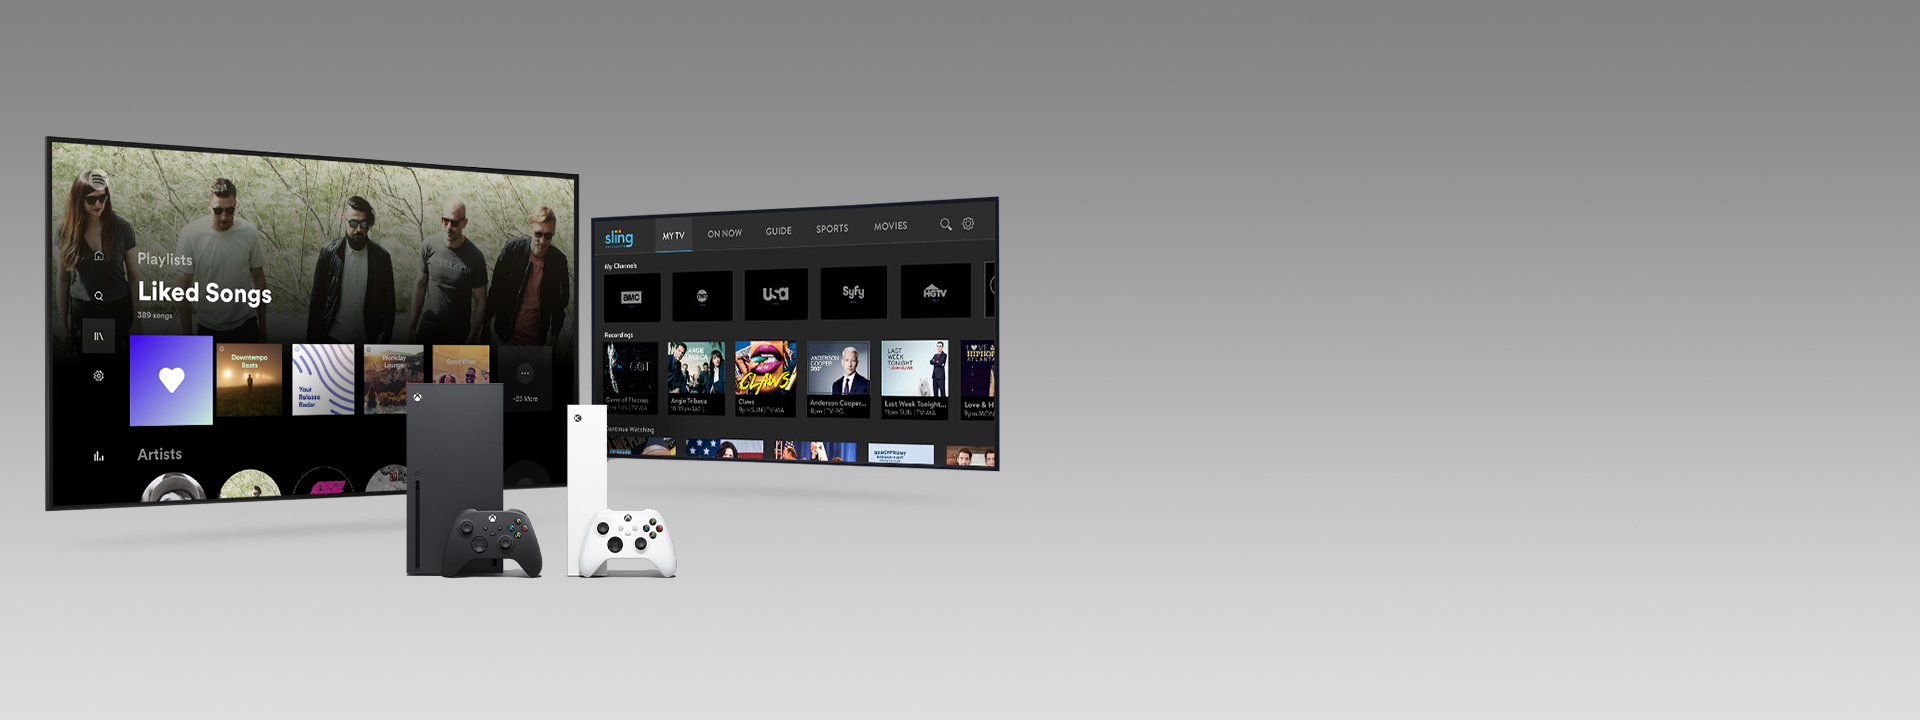 Une Xbox Series X et Series S avec des manettes devant deux écrans de télévision avec des interfaces utilisateur d’applications.